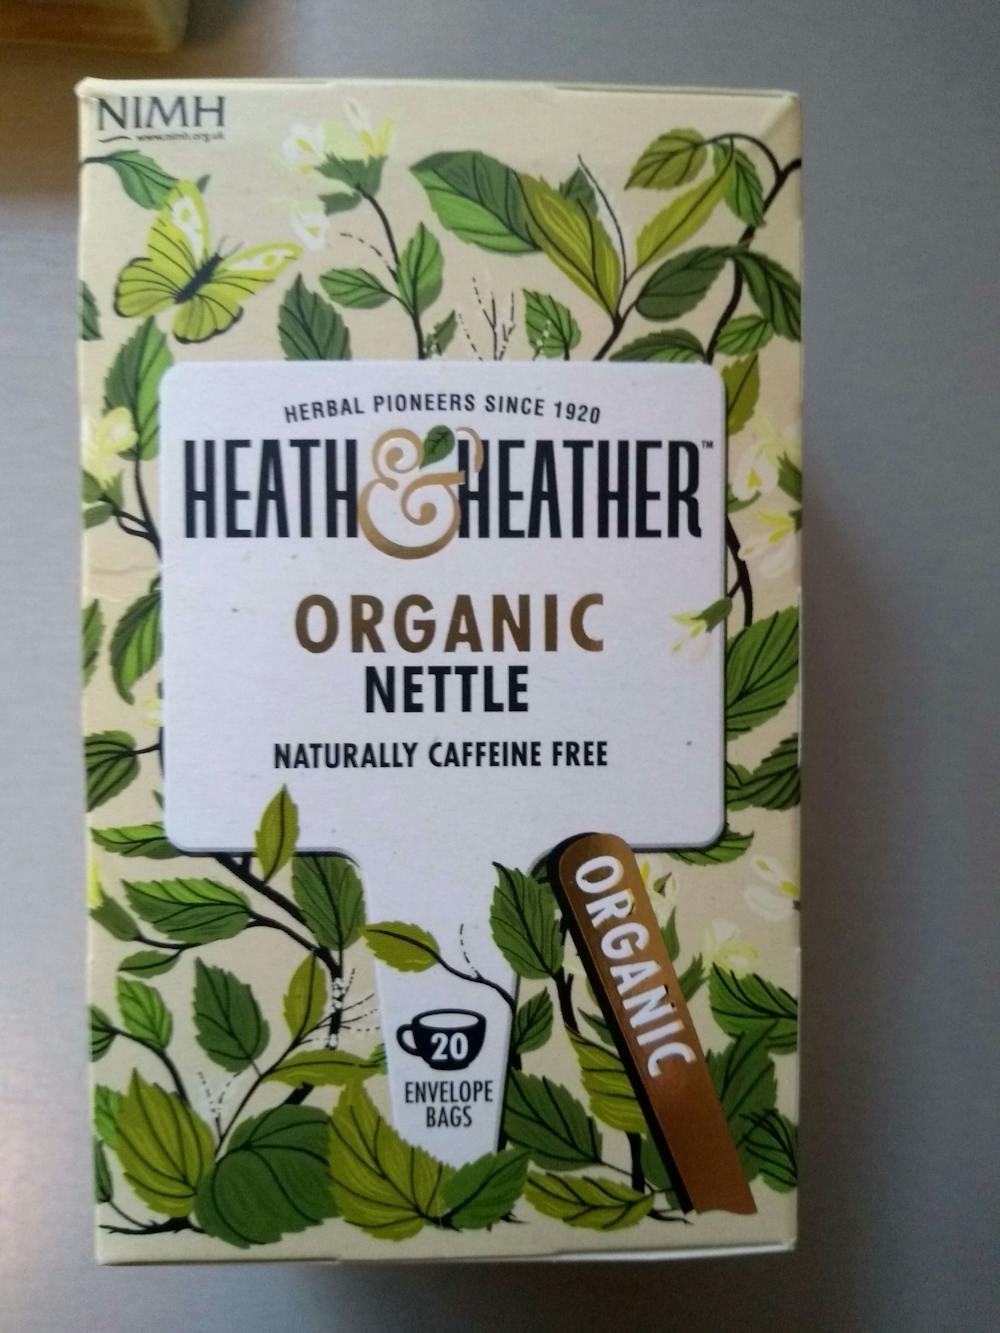 Organic nettle, Heath&heather